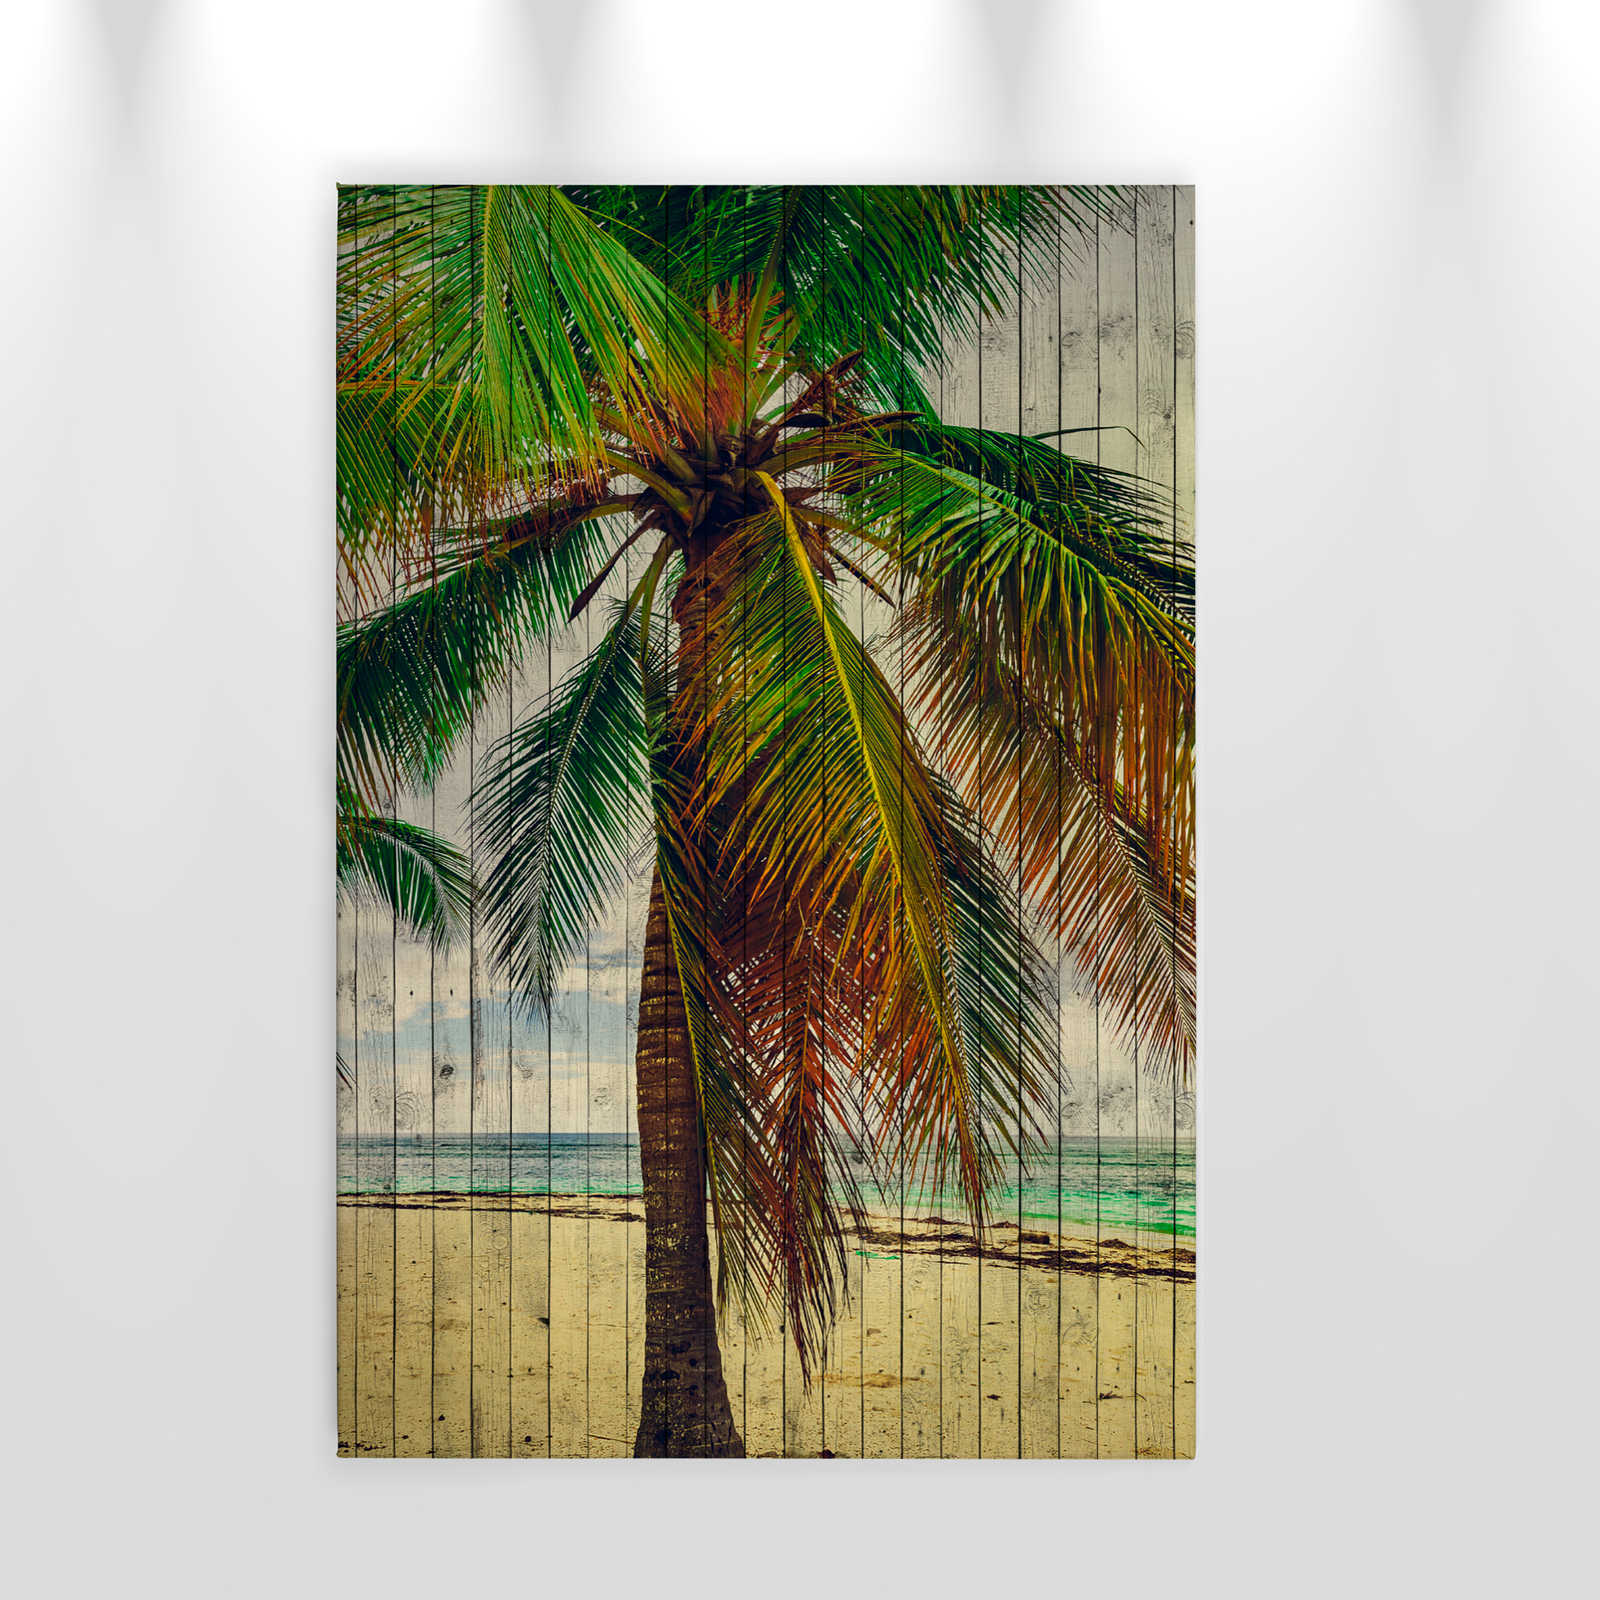             Tahiti 3 - Palmiers toile avec un sentiment de vacances - panneaux de bois structure - 0,60 m x 0,90 m
        